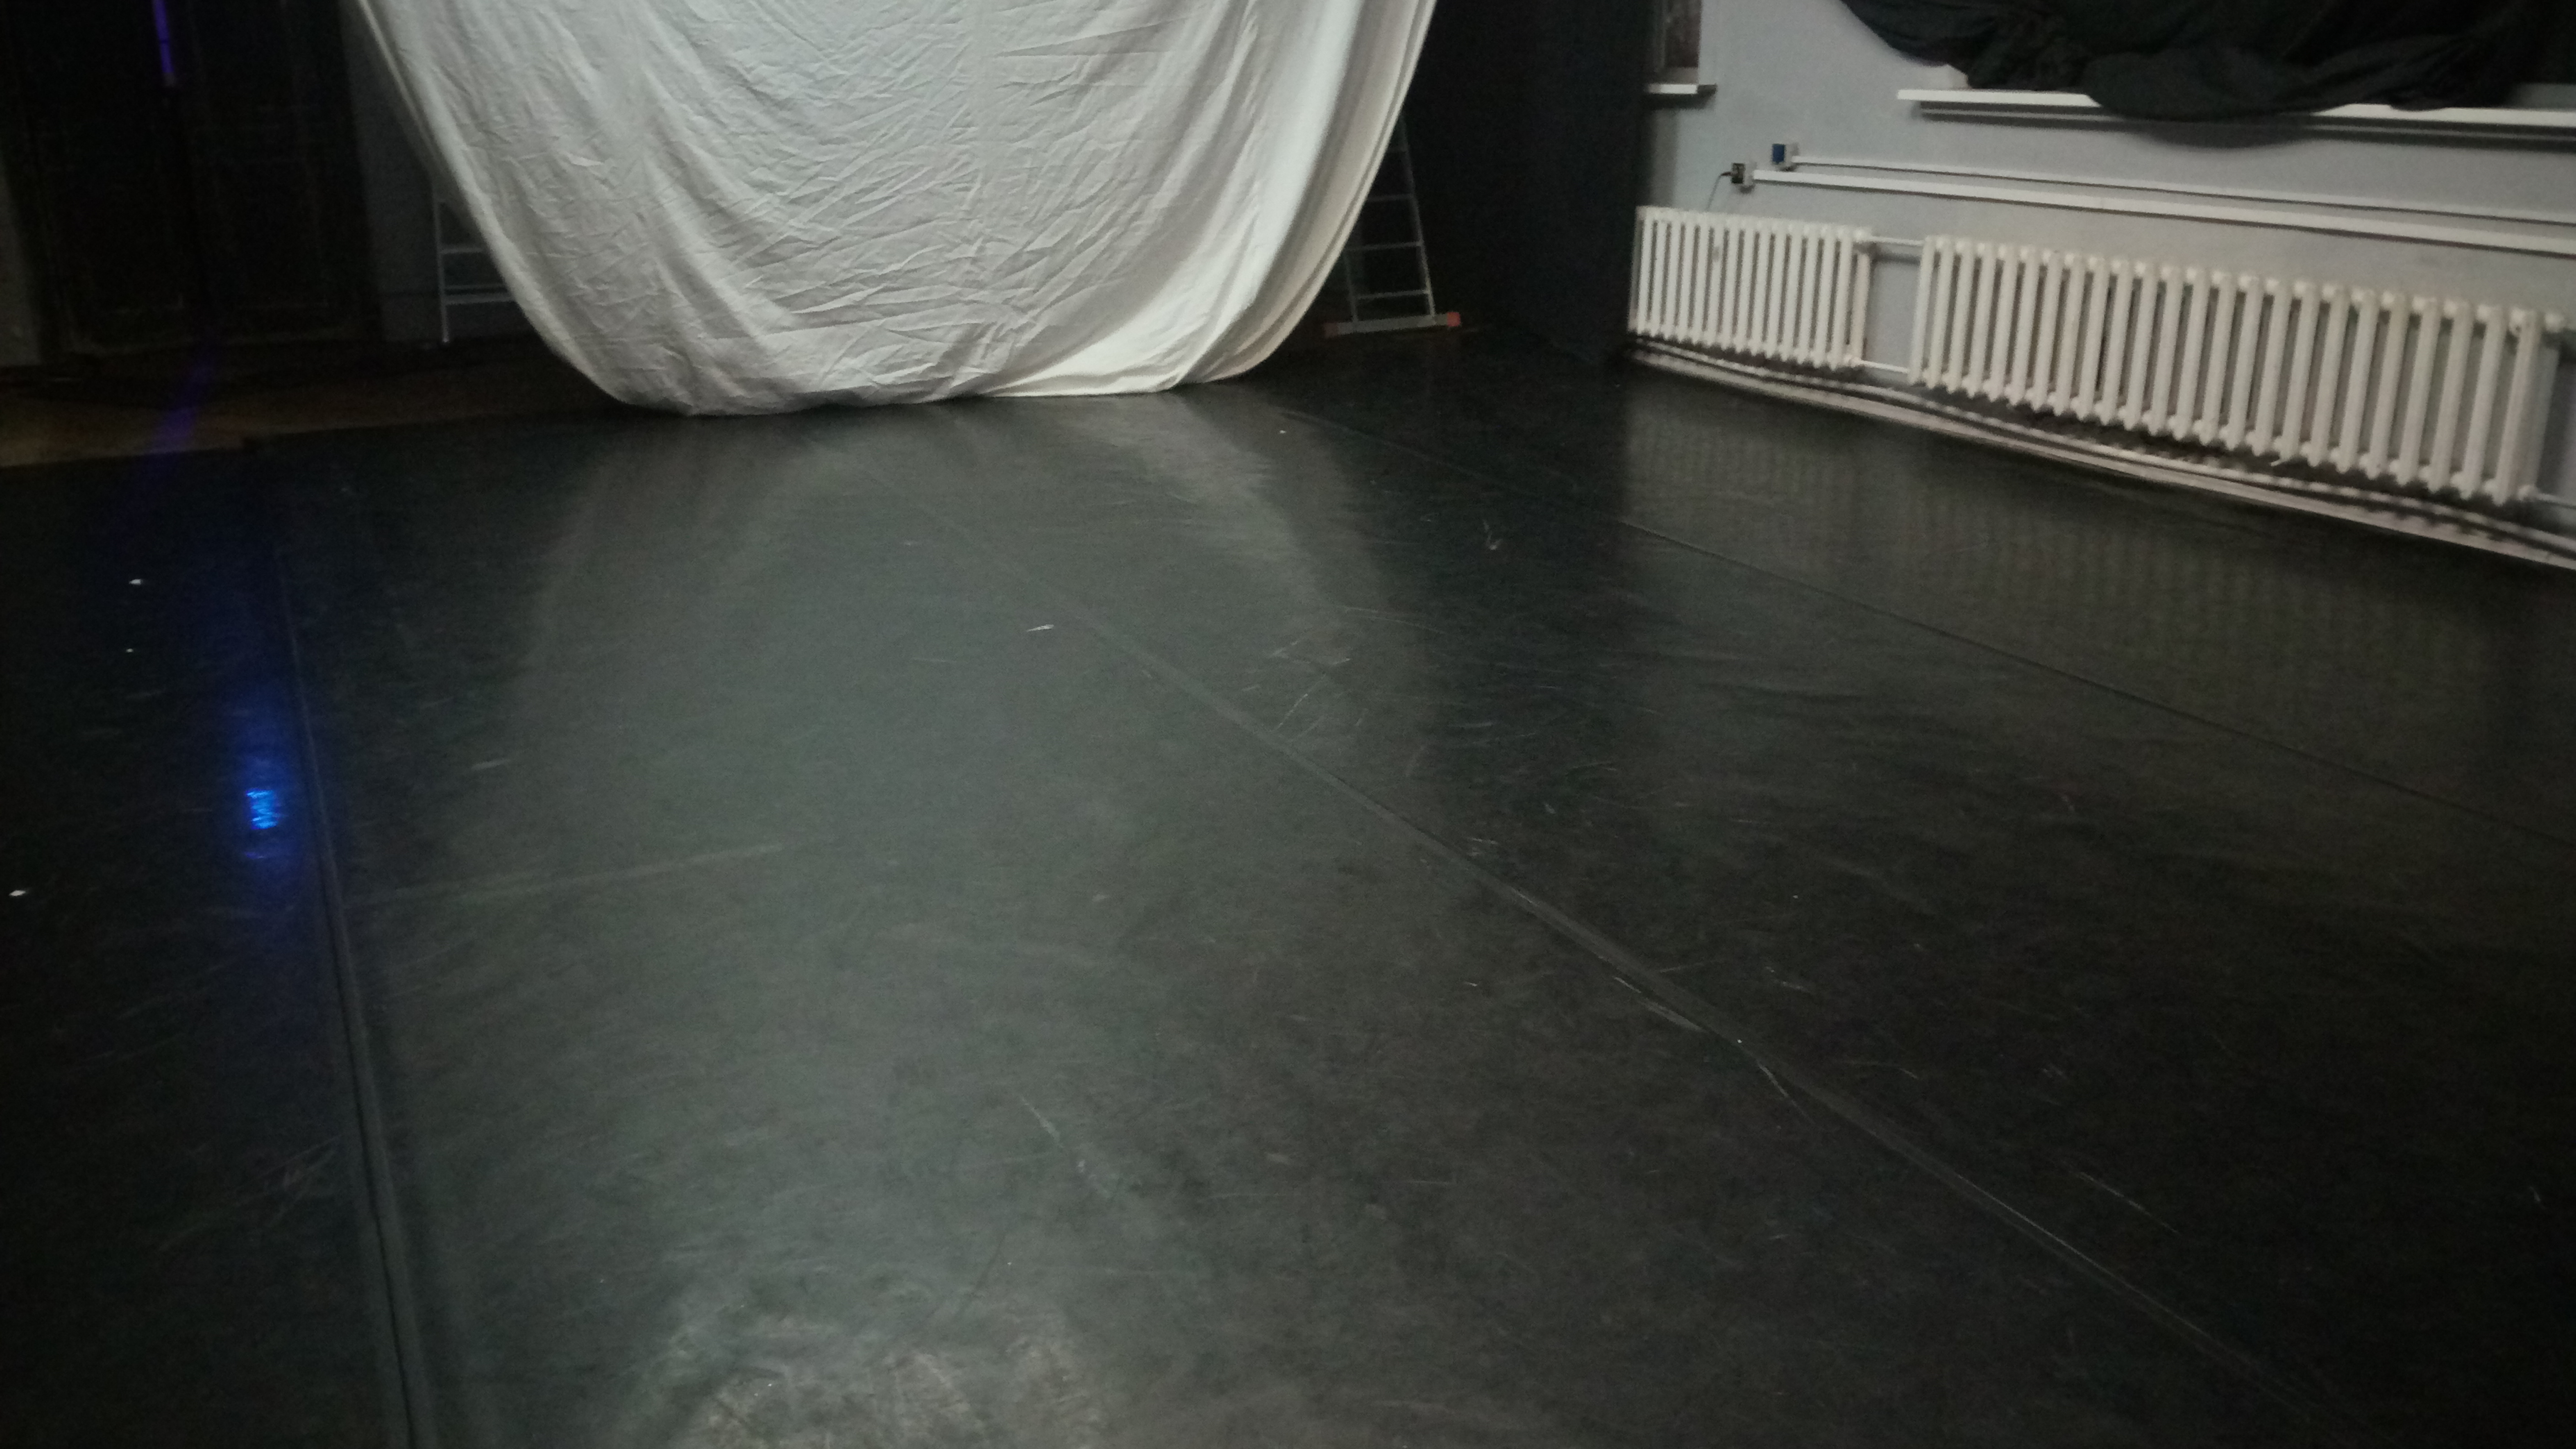 Танцевальный класс в Санкт-Петербургском театре «Балтийский дом»: сценический линолеум «CONSOR» чёрного цвета от австрийского производителя - компании TUCHLER.